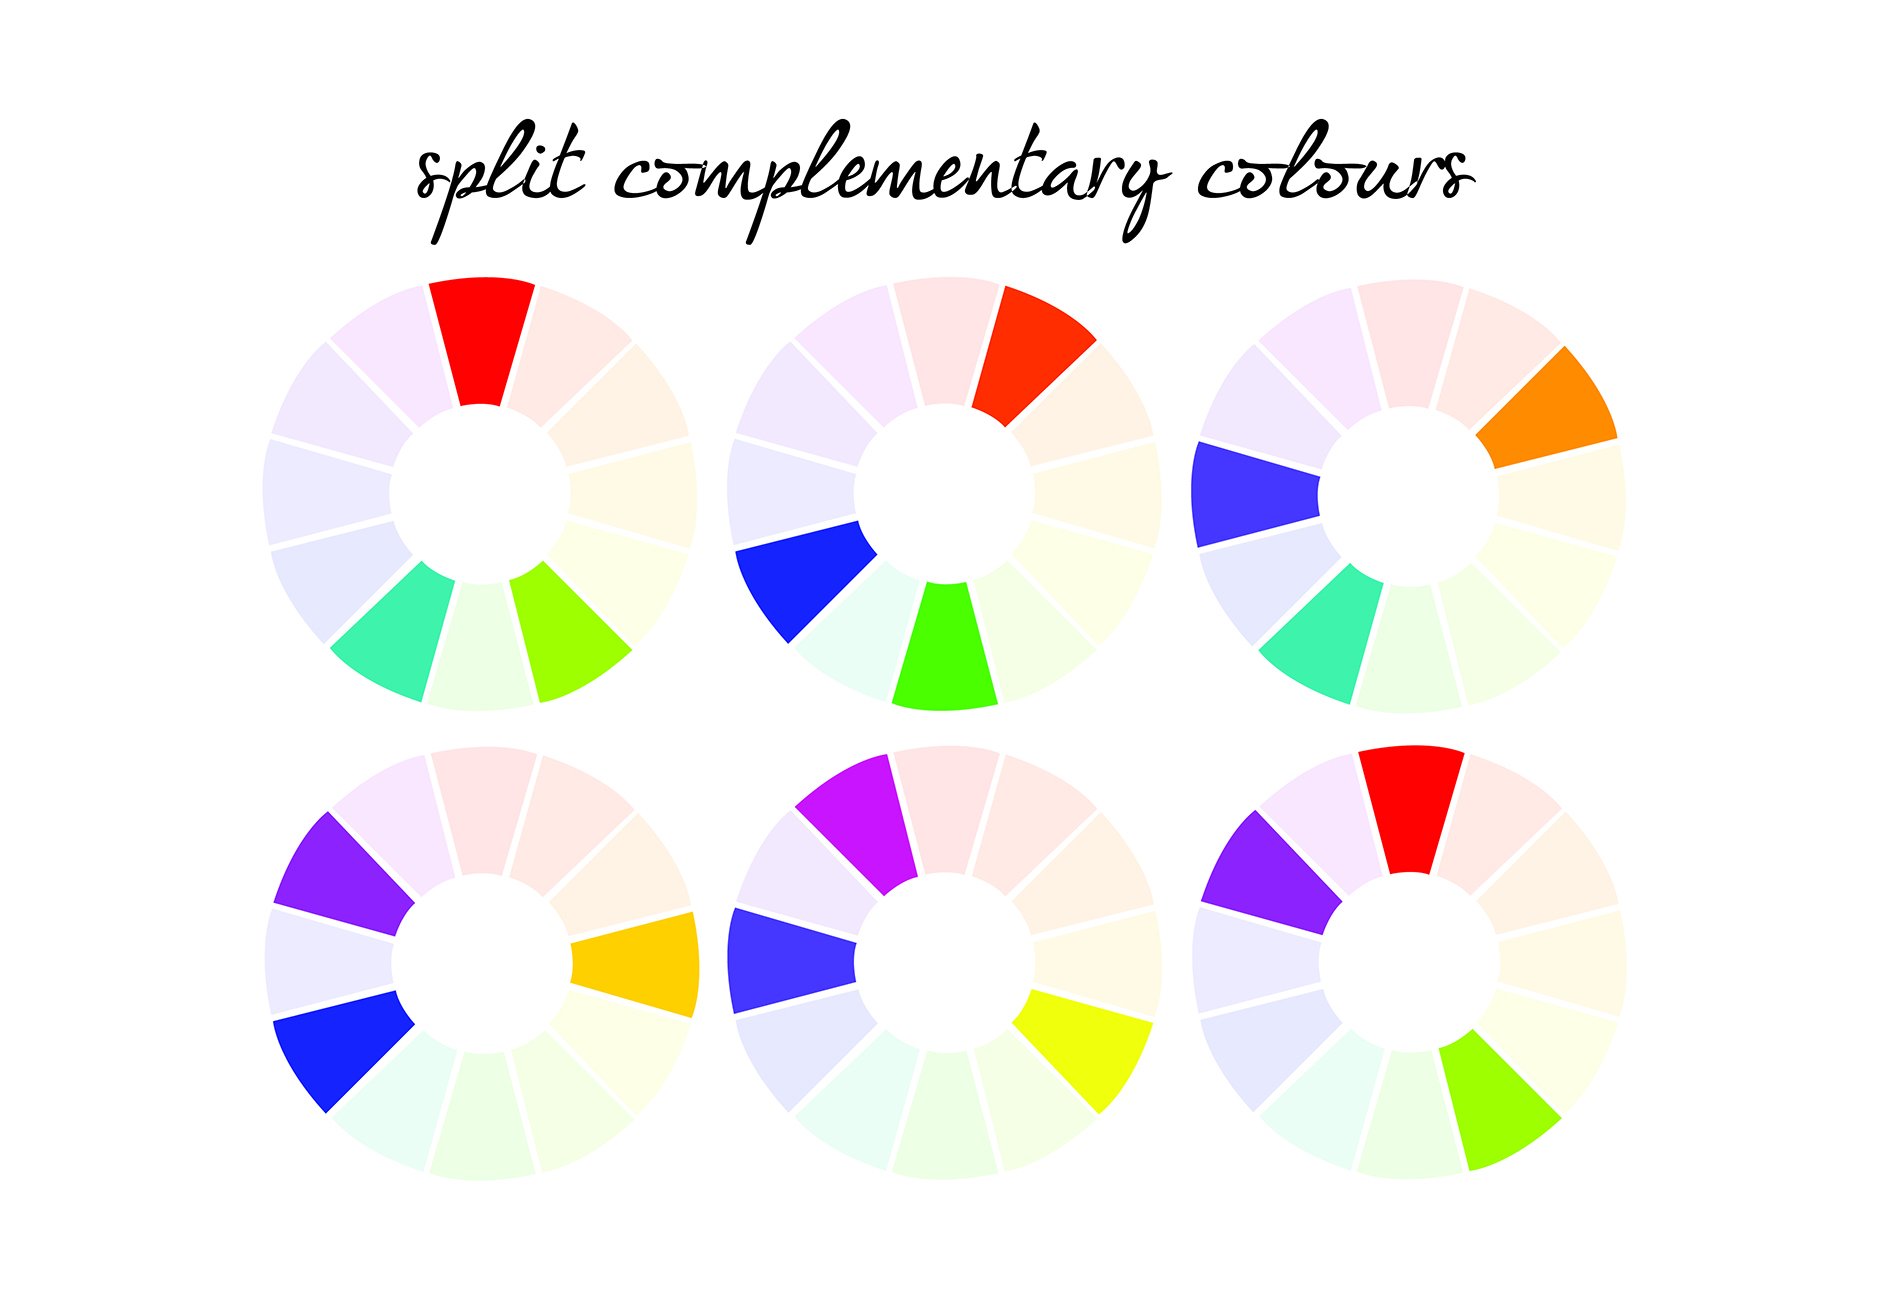 Комплиментарный парфюм. Сплит комплементарная цветовая схема. Круг Иттена комплиментарные цвета. Сплит комплиментарная схема. Комплементарные цвета в цветовом круге.